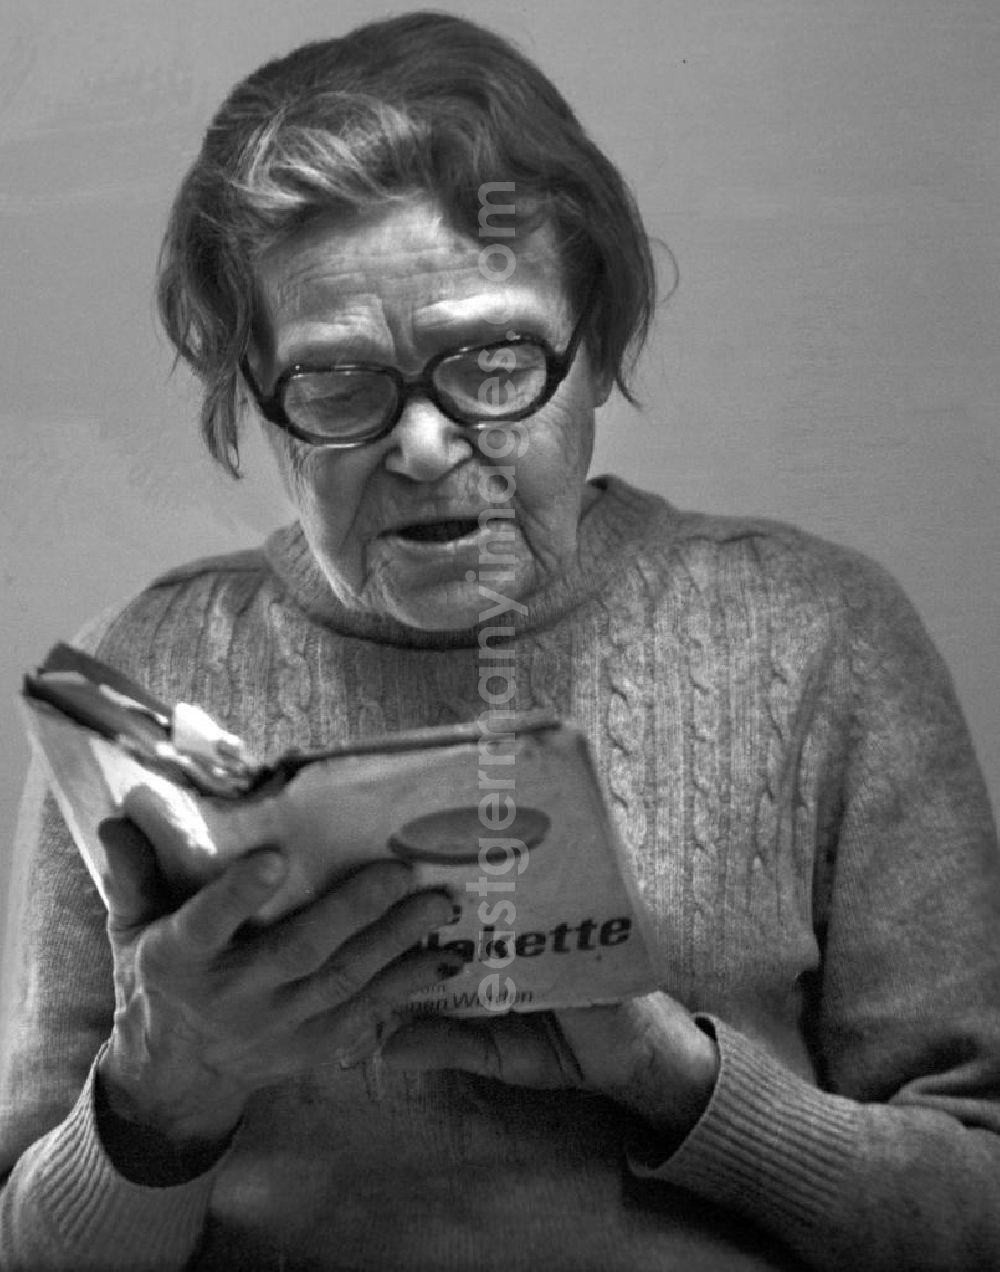 GDR picture archive: Berlin - Die Schriftstellerin Trude Richter liest aus ihrem Buch Die Plakette auf der Eröffnung der Anton-Saefkow-Bibliothek in Berlin-Lichtenberg.